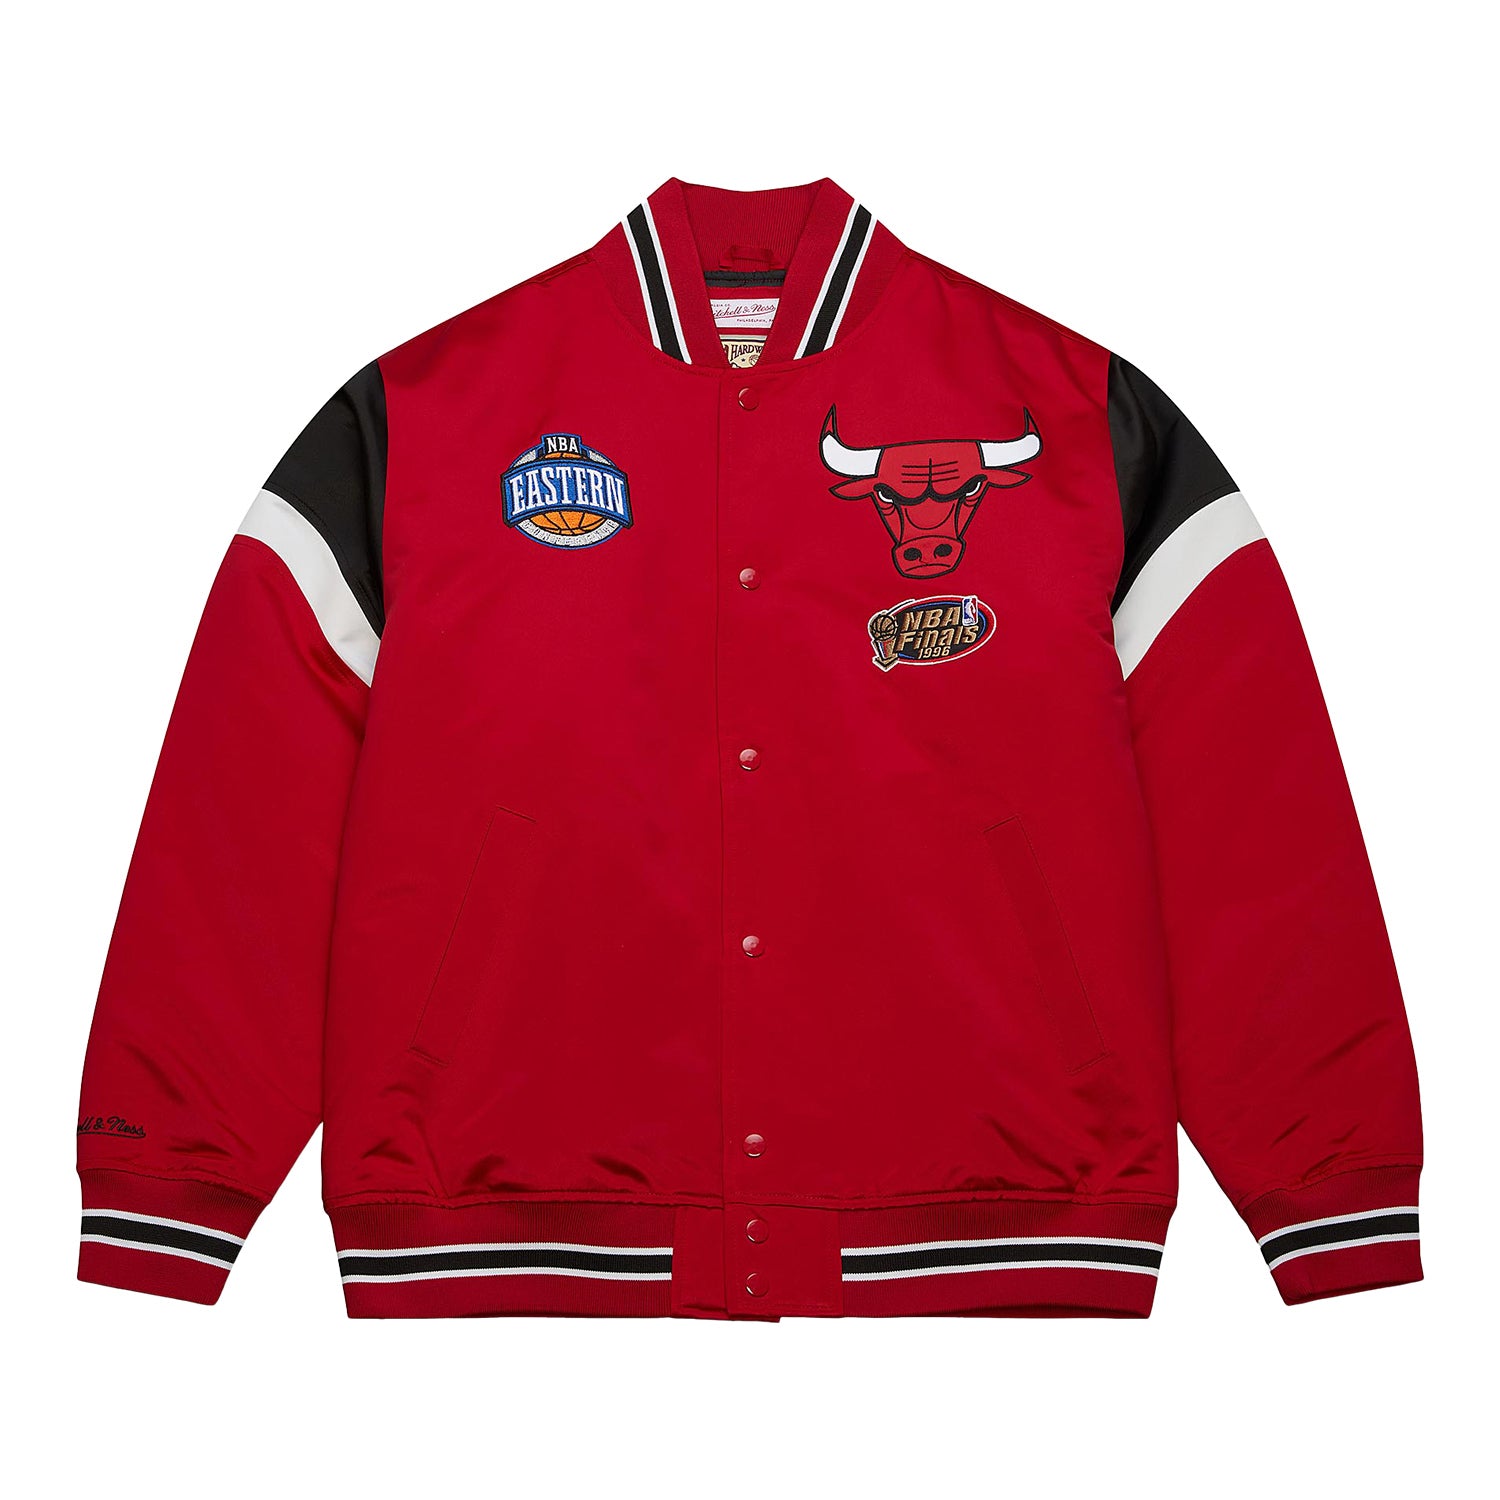 Chicago Bulls Jacket, Bulls Pullover, Chicago Bulls Varsity Jackets, Fleece  Jacket